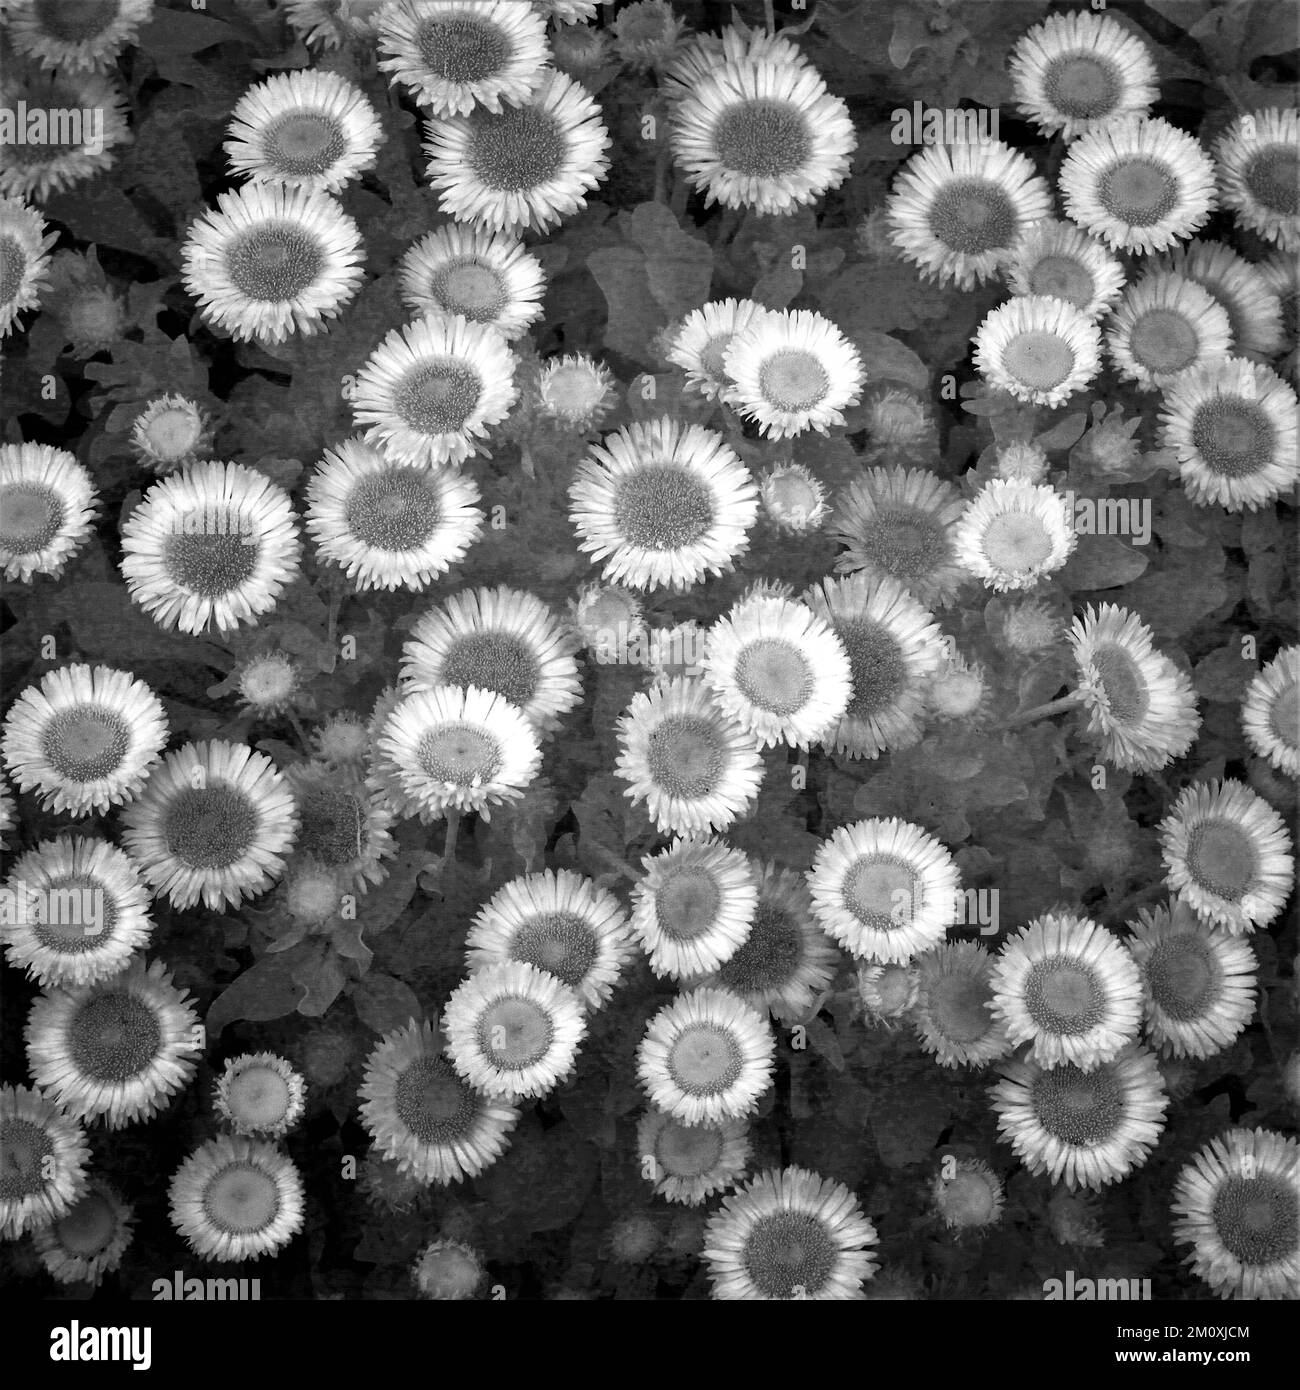 Résumé Impressionnisme de la photographie infrarouge couleur discrète de la fleur d'Erigeron de plantes cultivées prises dans le jardin de High Meadow. Banque D'Images